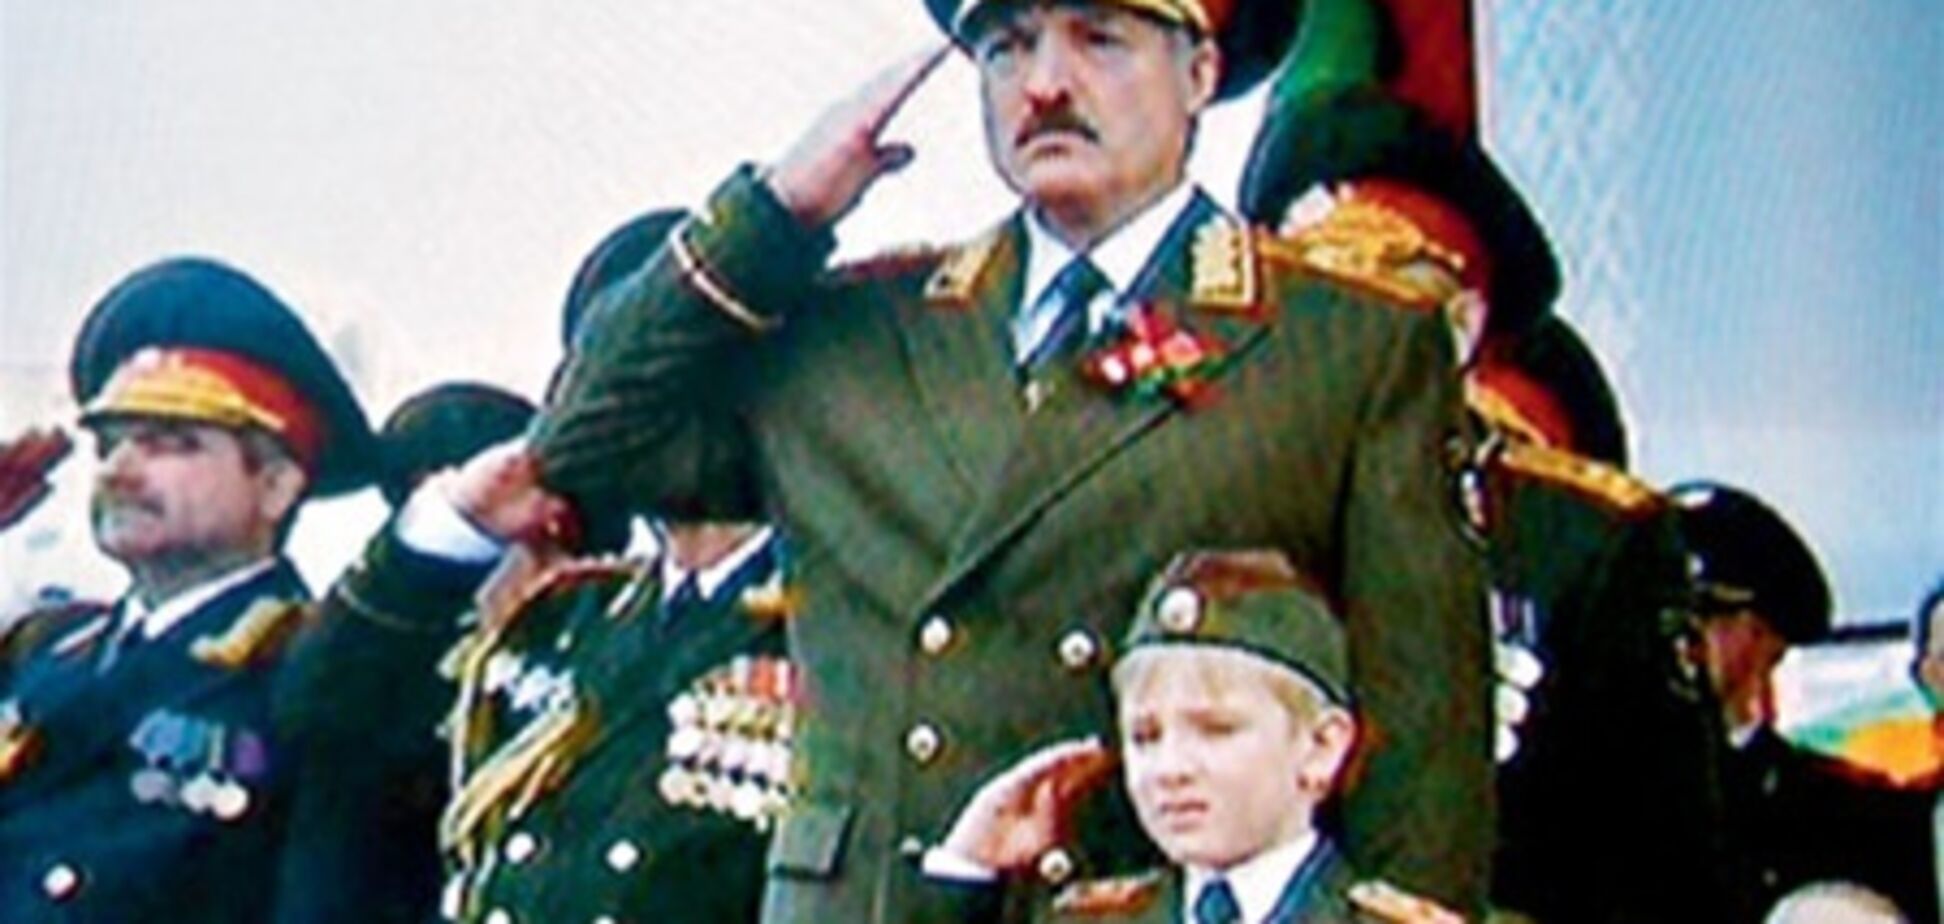 Син Лукашенка зніметься в' Єралаші'?